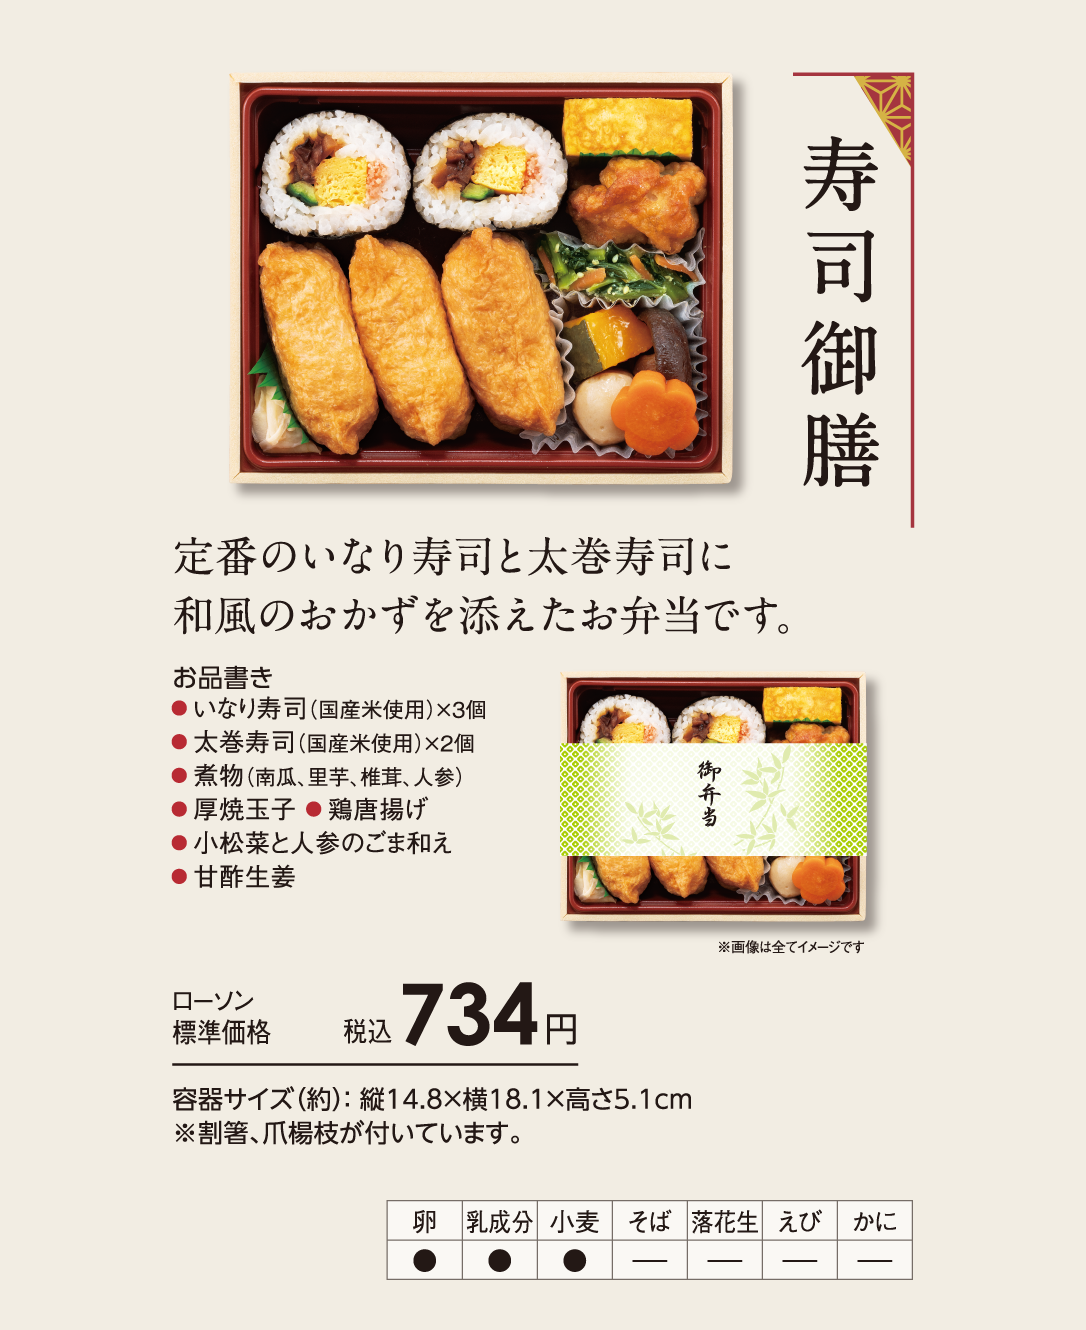 寿司御膳「定番のいなり寿司と太巻寿司に和風のおかずを添えたお弁当です。」ローソン標準価格 税込734円